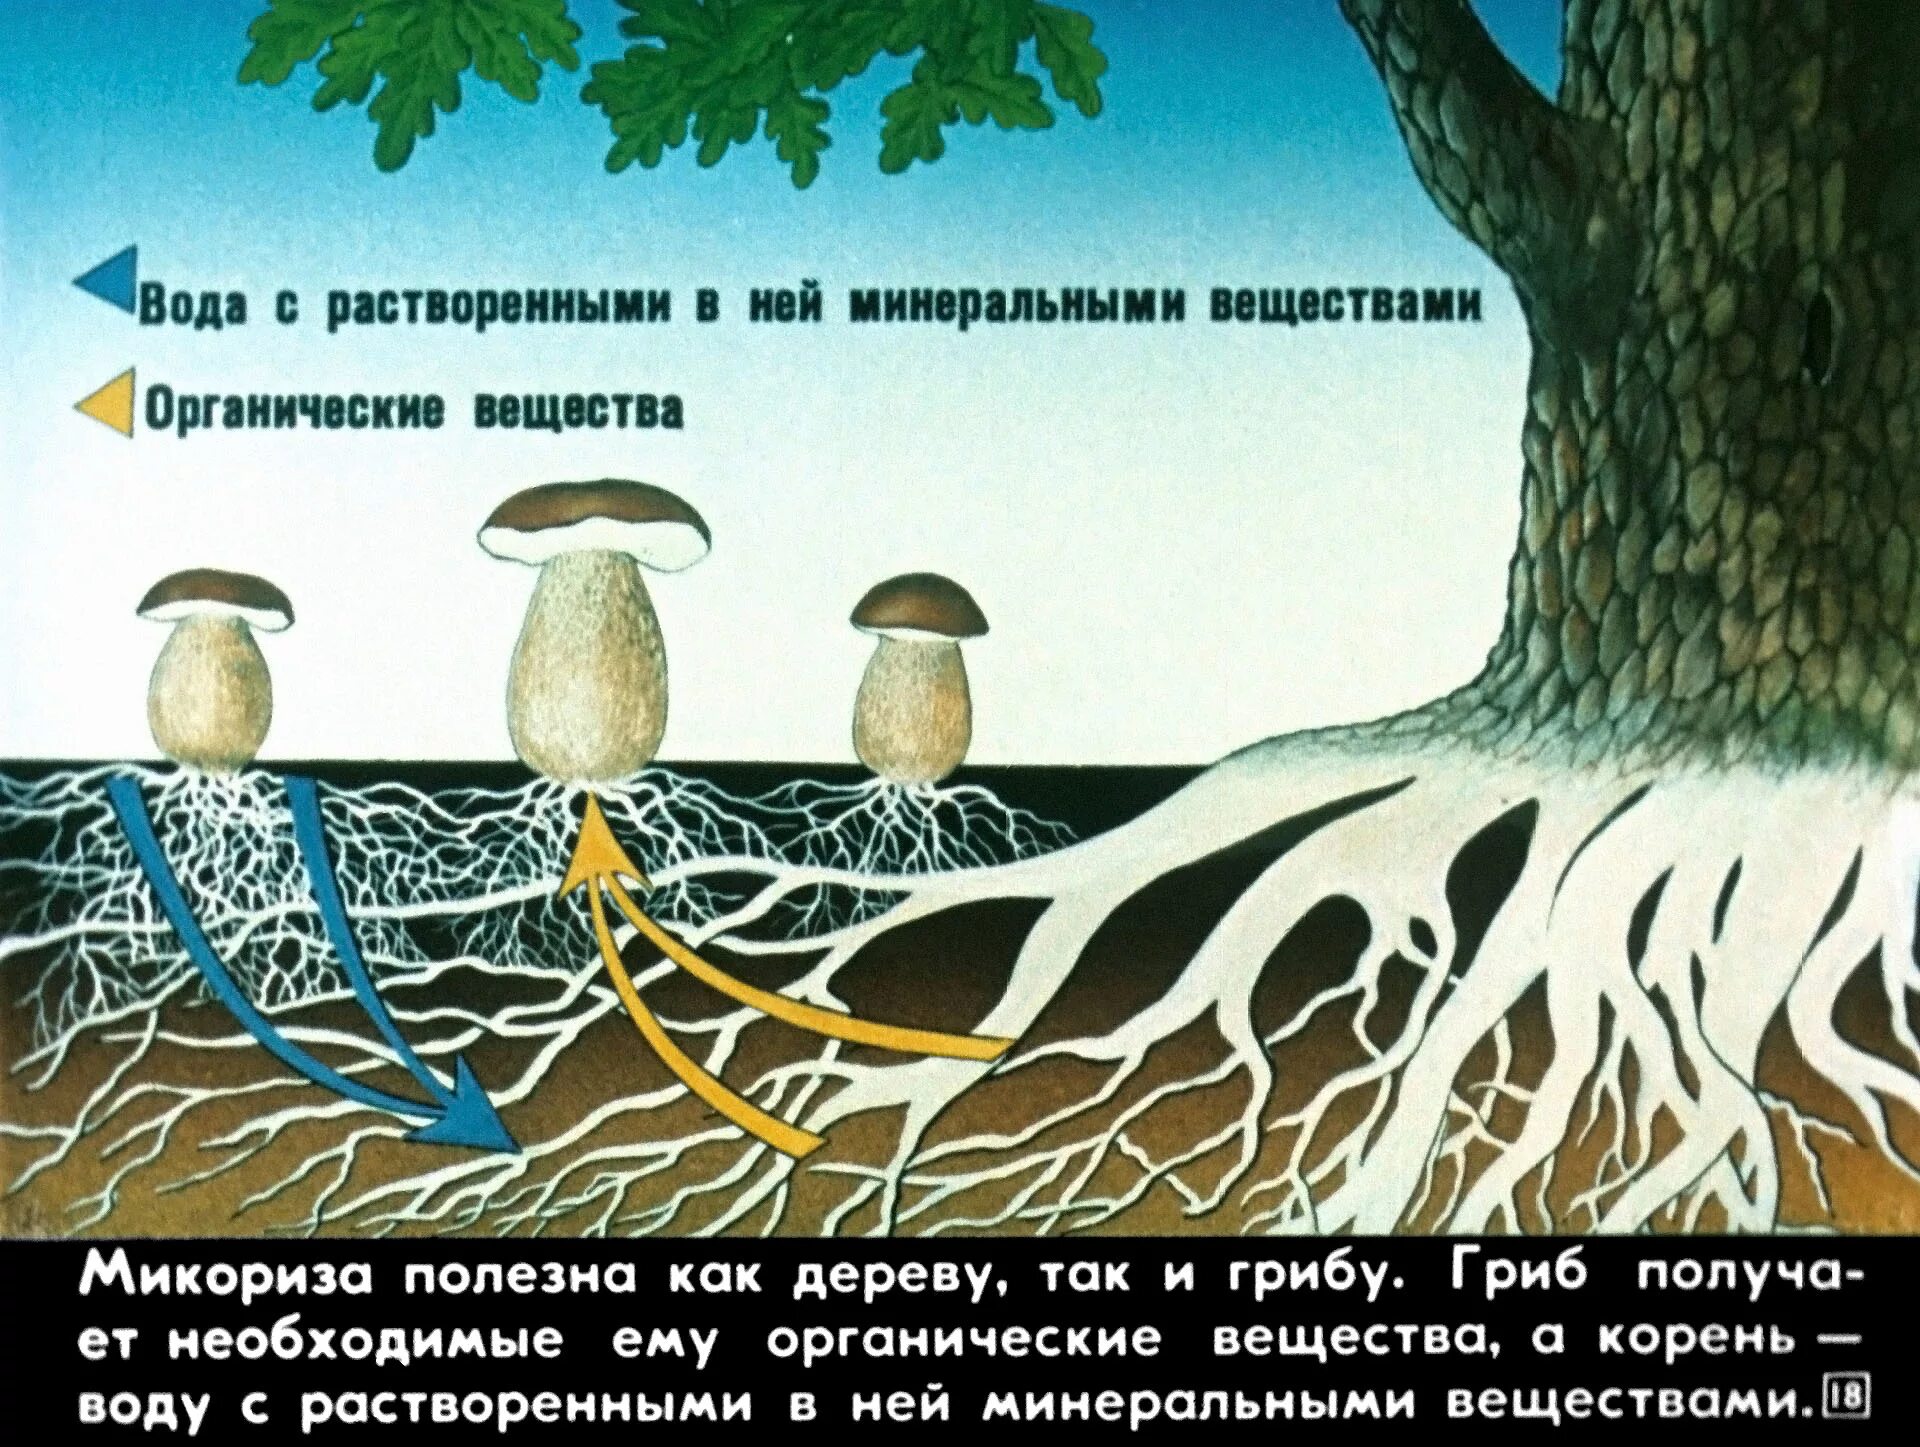 Корневой гриб. Схема симбиоза гриба и дерева. Микориза с грибами-симбионтами. Взаимосвязь грибов и деревьев. Симбиоз гриба и растения.